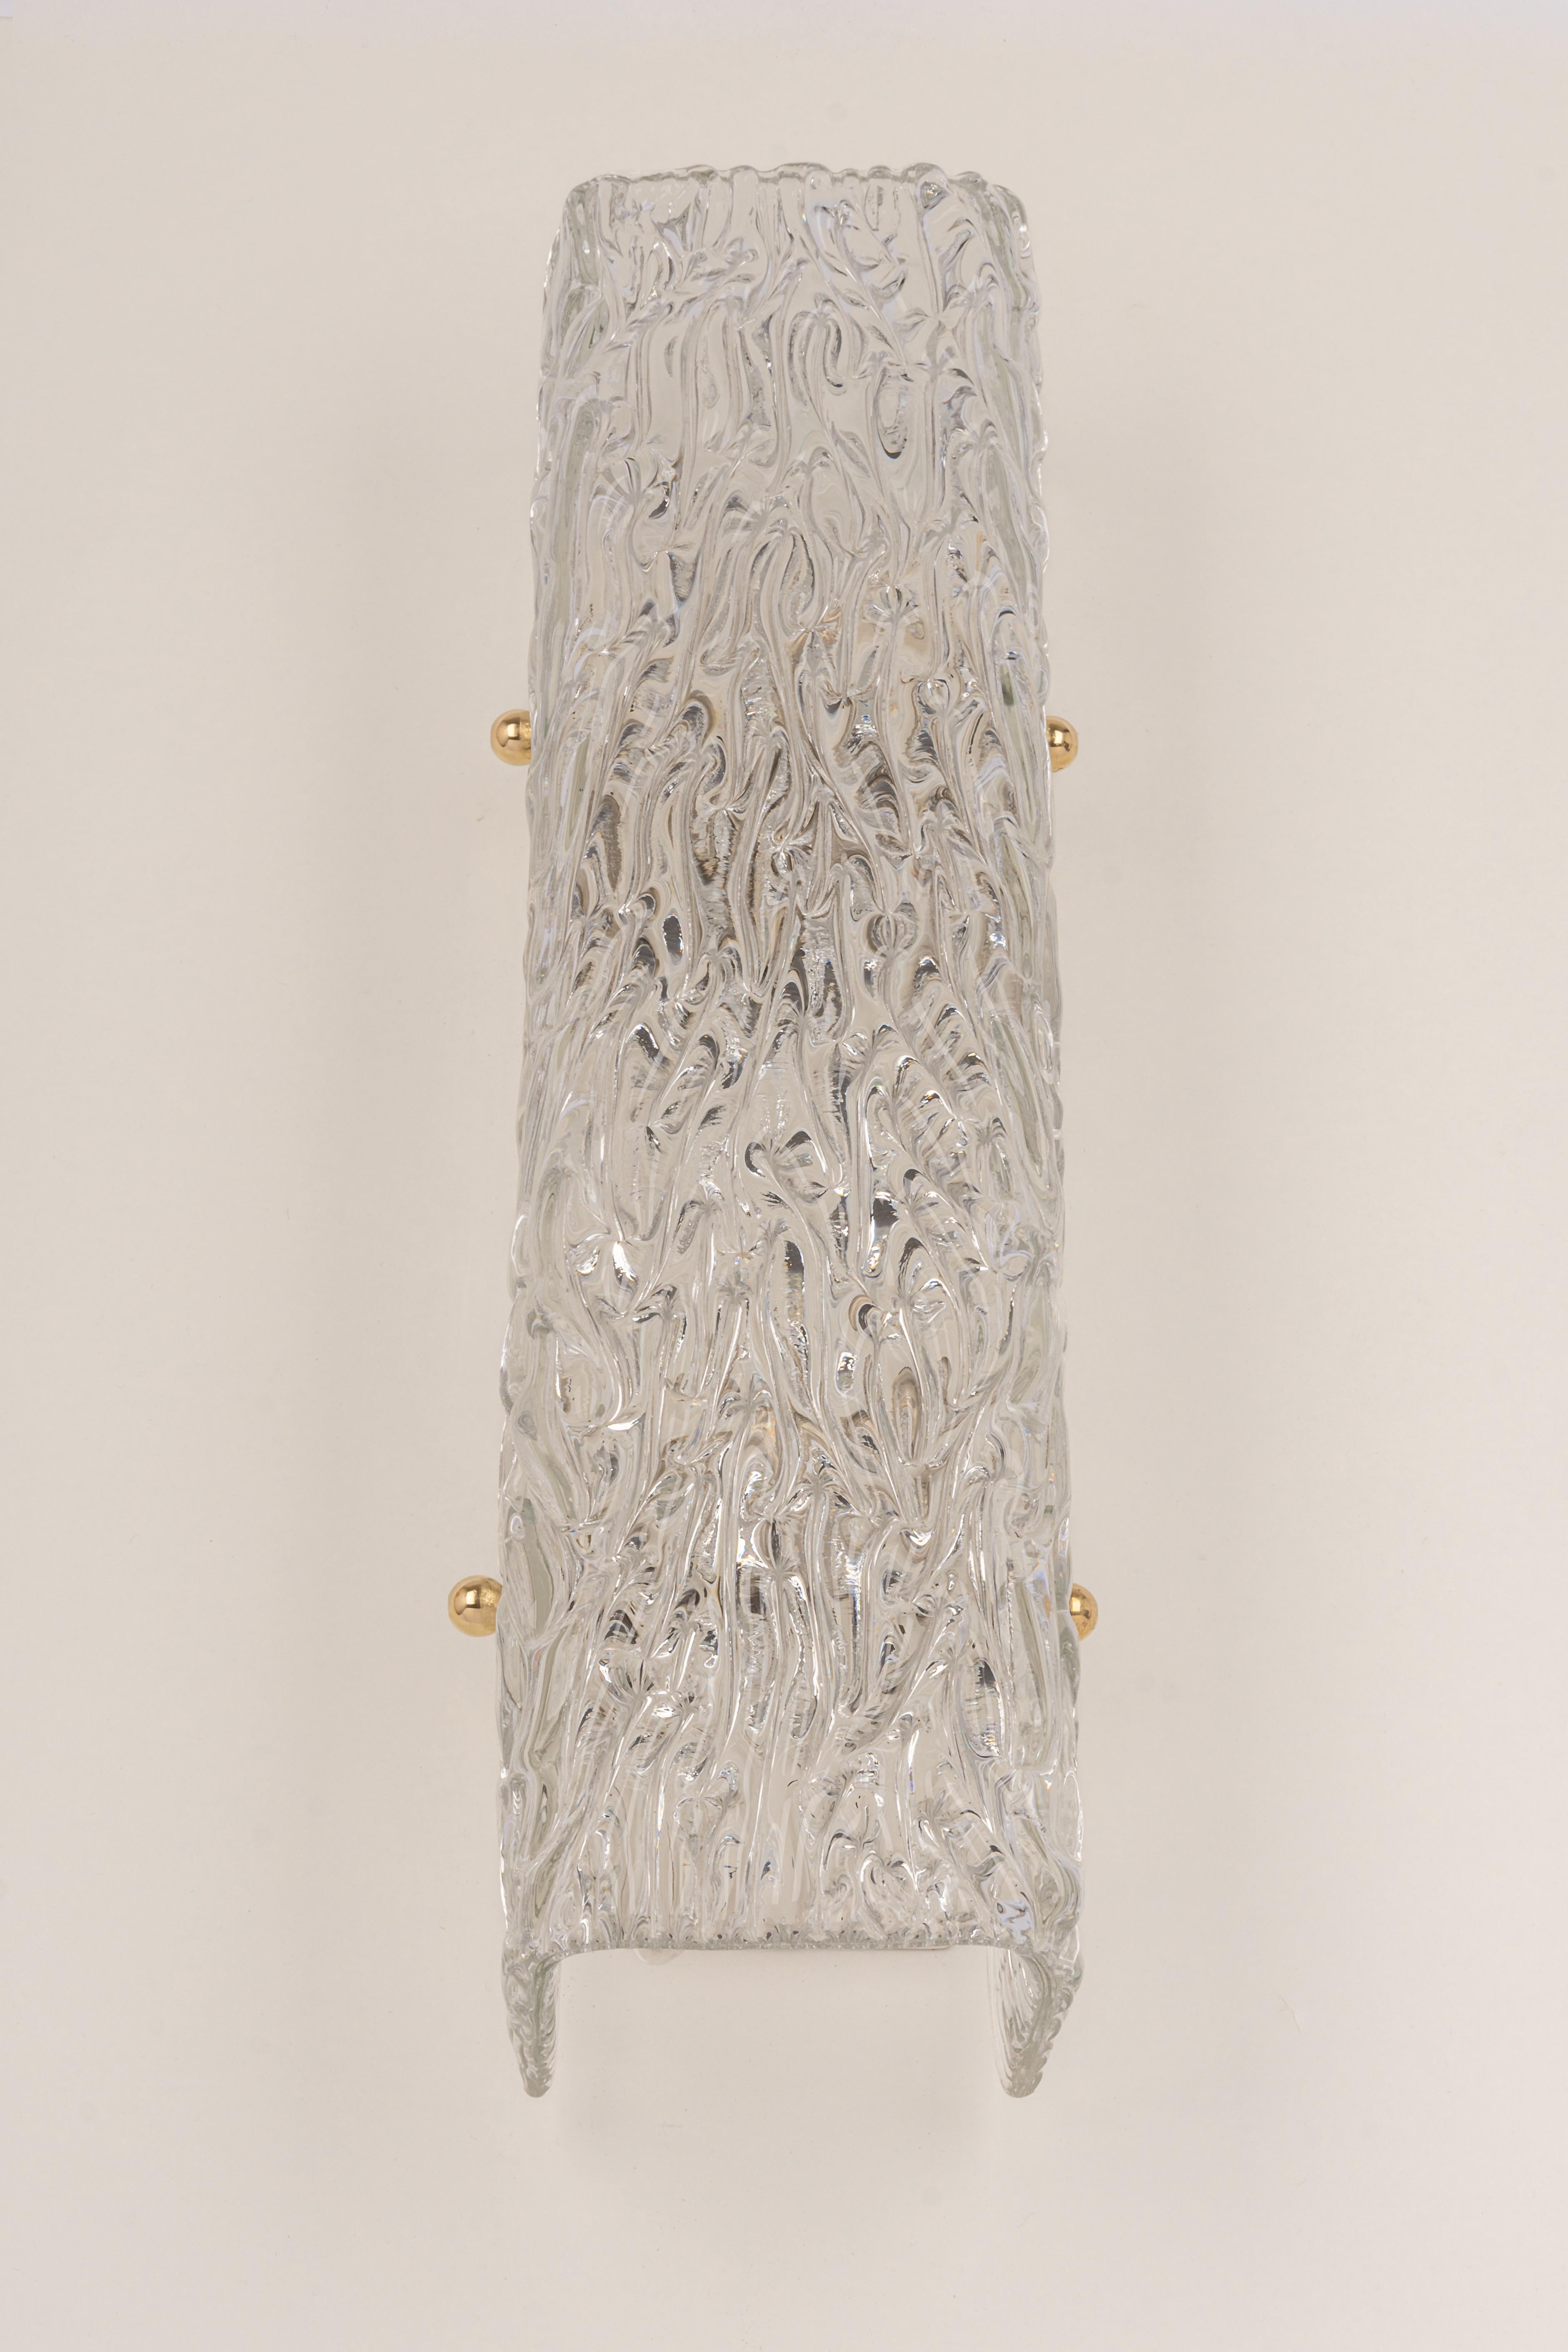 Wunderschöner Wandleuchter aus der Mitte des Jahrhunderts mit Murano-Glas, hergestellt von Kalmar, Österreich, ca. 1960-1969.
Hochwertig und in sehr gutem Zustand. Gereinigt, gut verkabelt und einsatzbereit.  

Die Leuchte benötigt 3 x E14